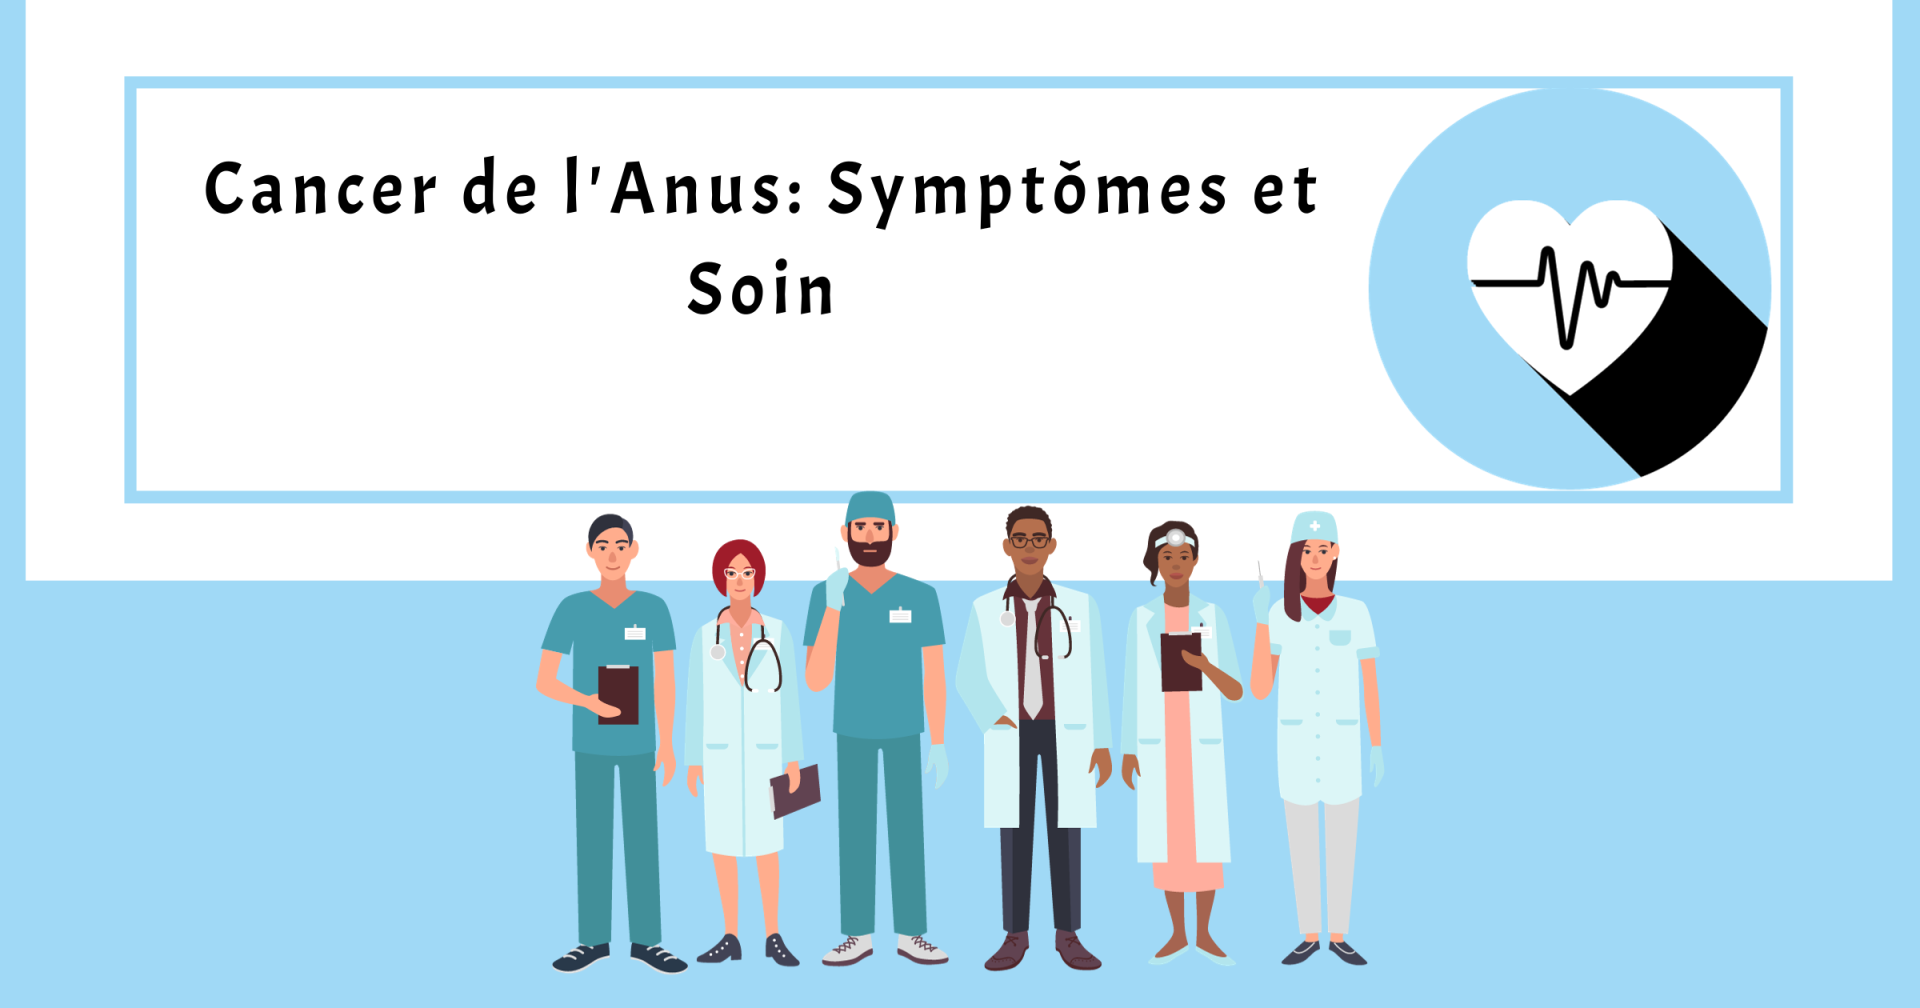 Cancer de l'Anus: Symptômes et Soin